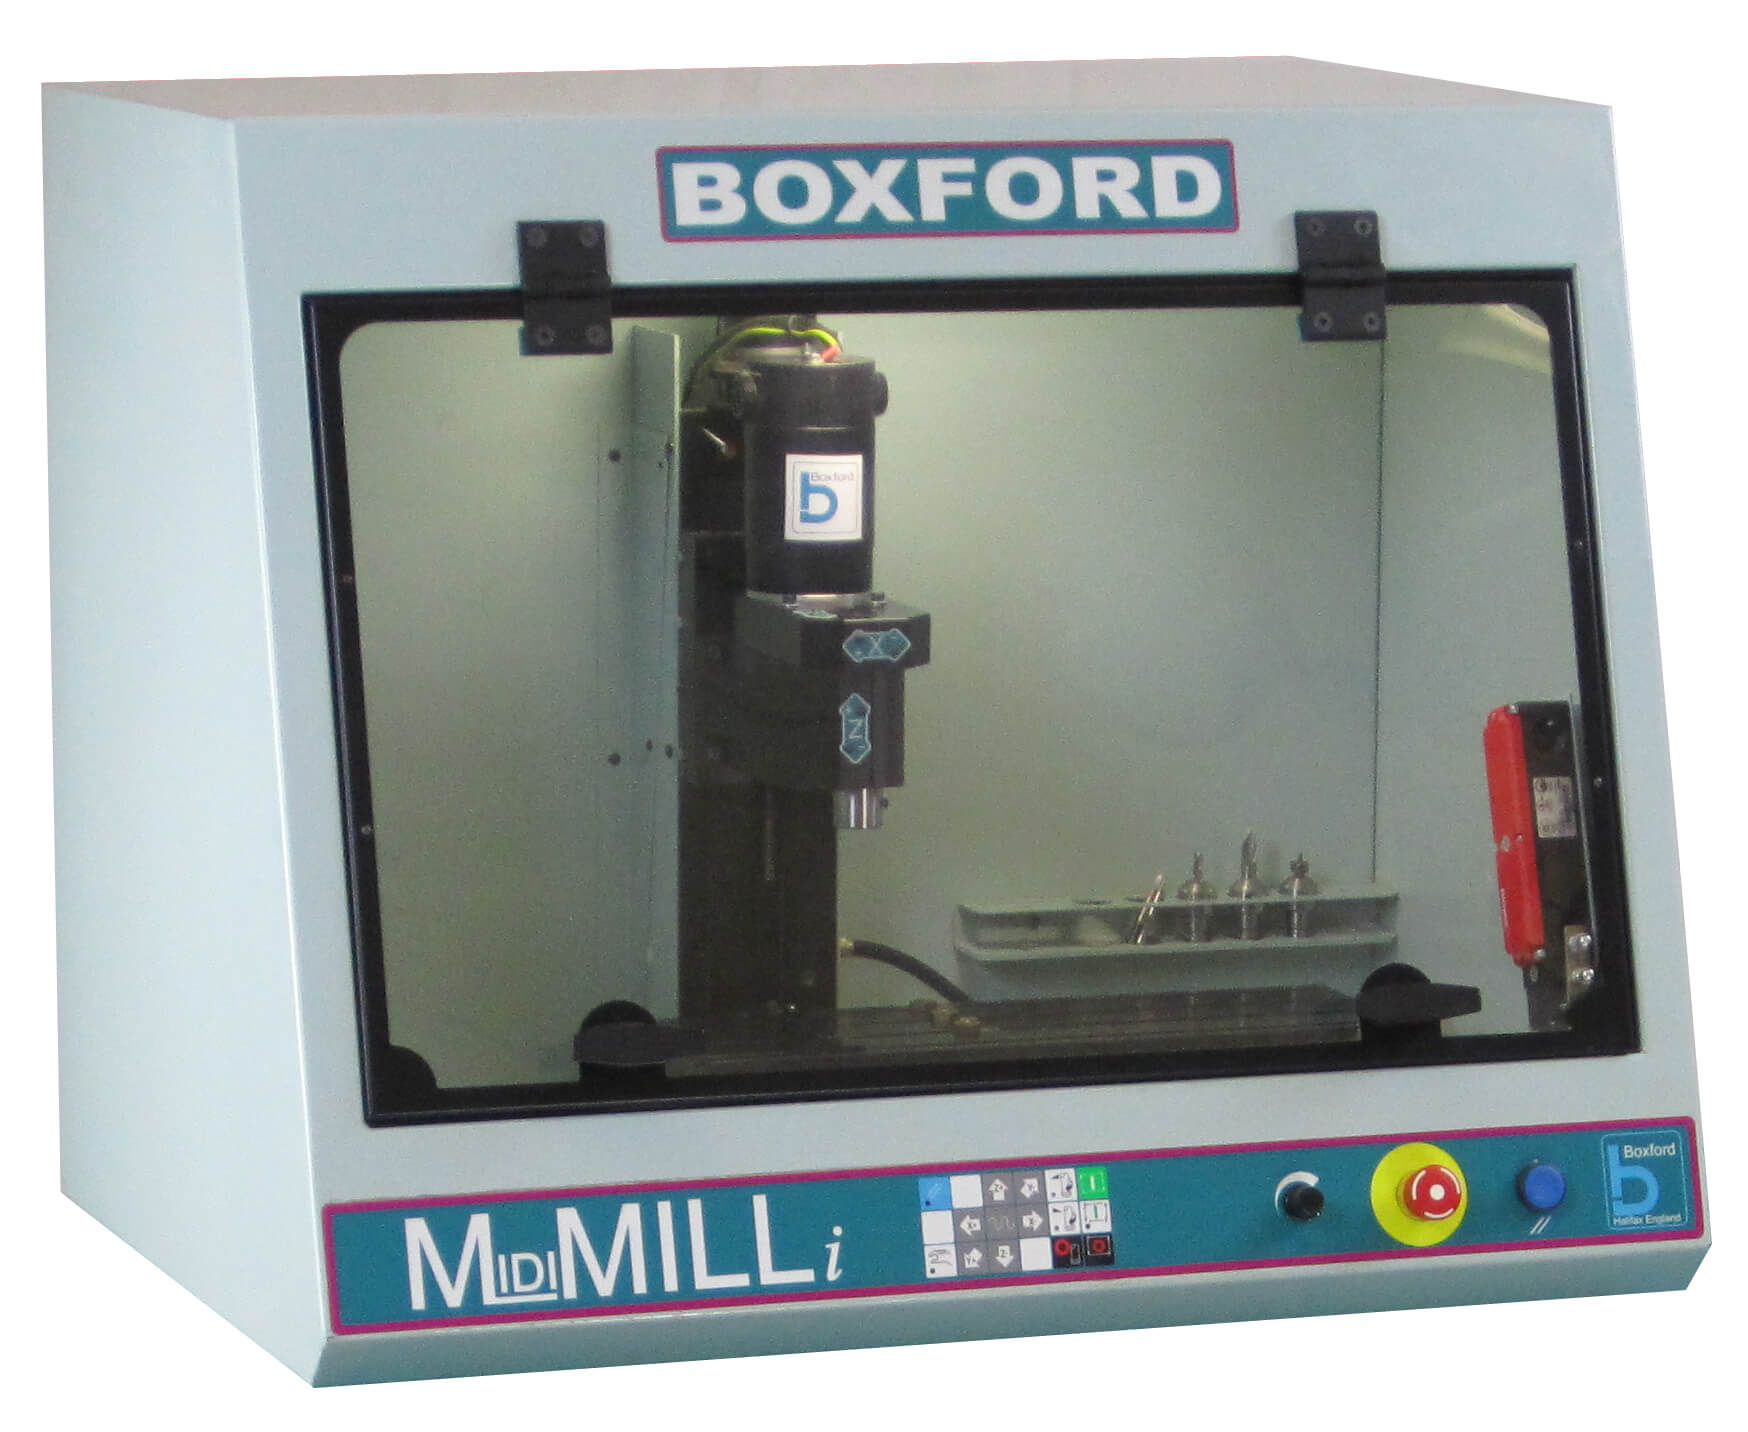 Boxford MidiMILLi CNC Bench Mounted Milling Machine